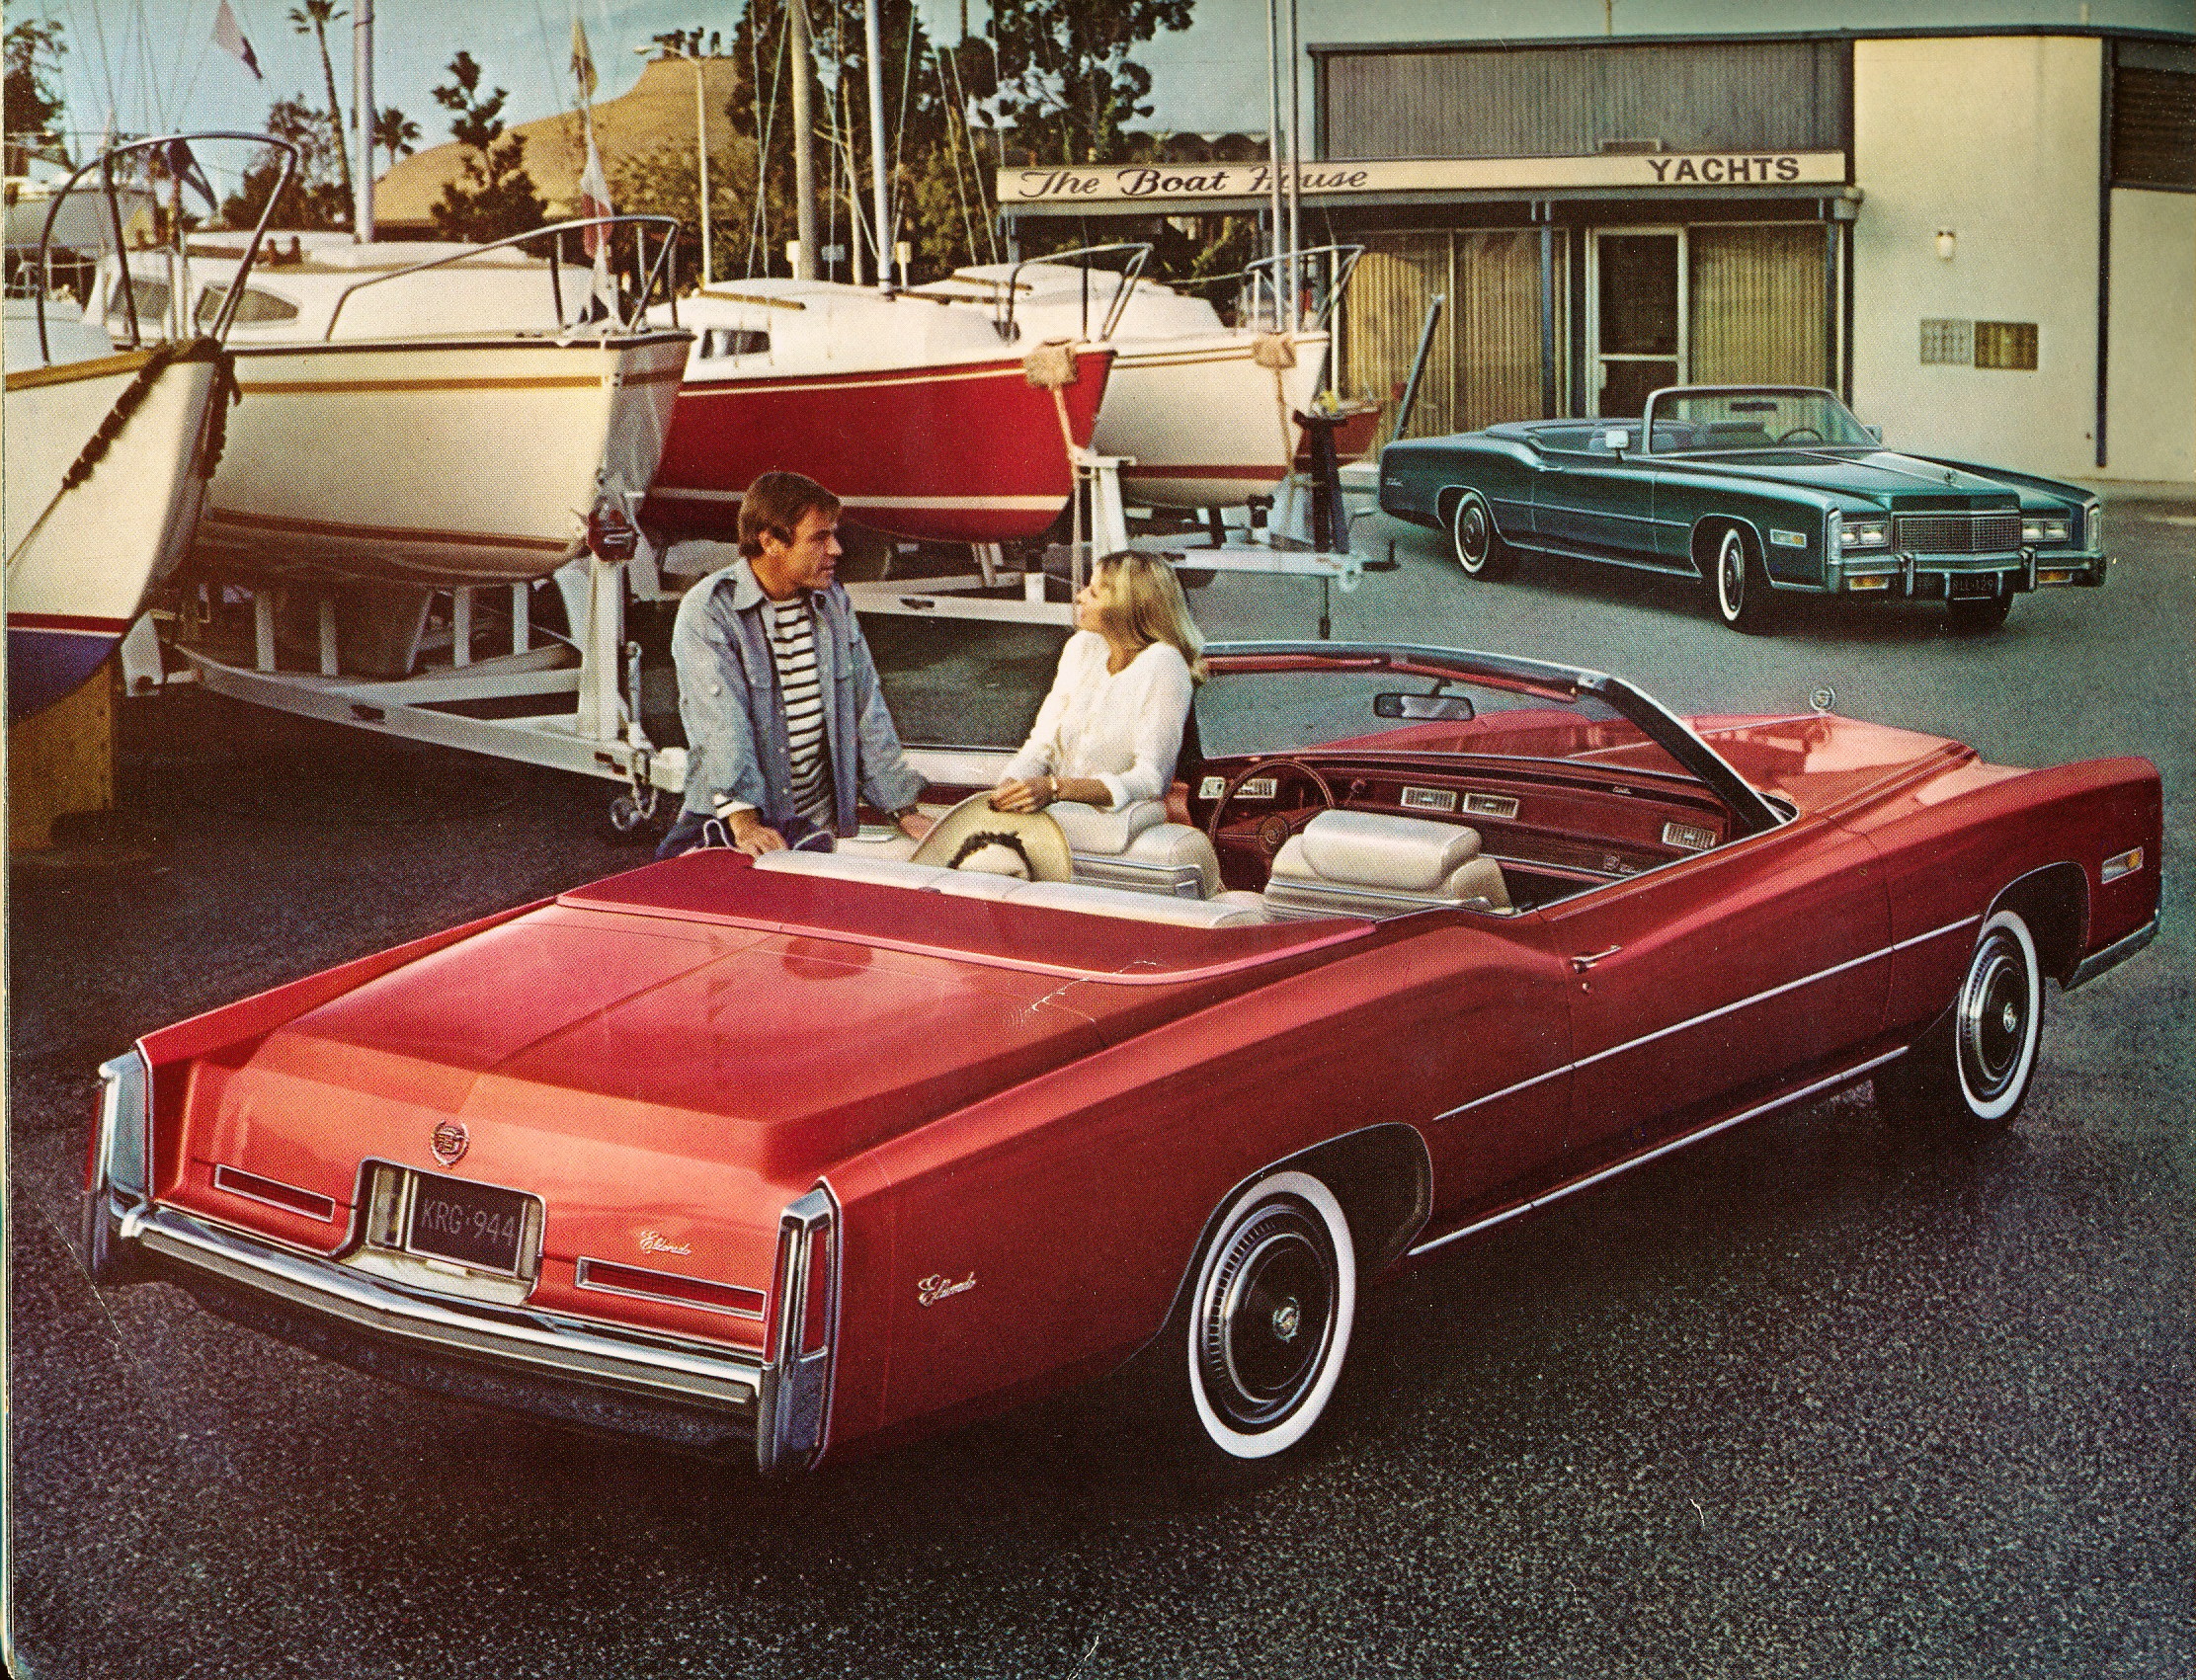 Den enorme Cadillac Eldorado fra 1975/1976 var ikke bare en vakker og mektig luksusbil, den hadde også verdens største bilmotor. En motor som hadde mye trimmingspotensiale…